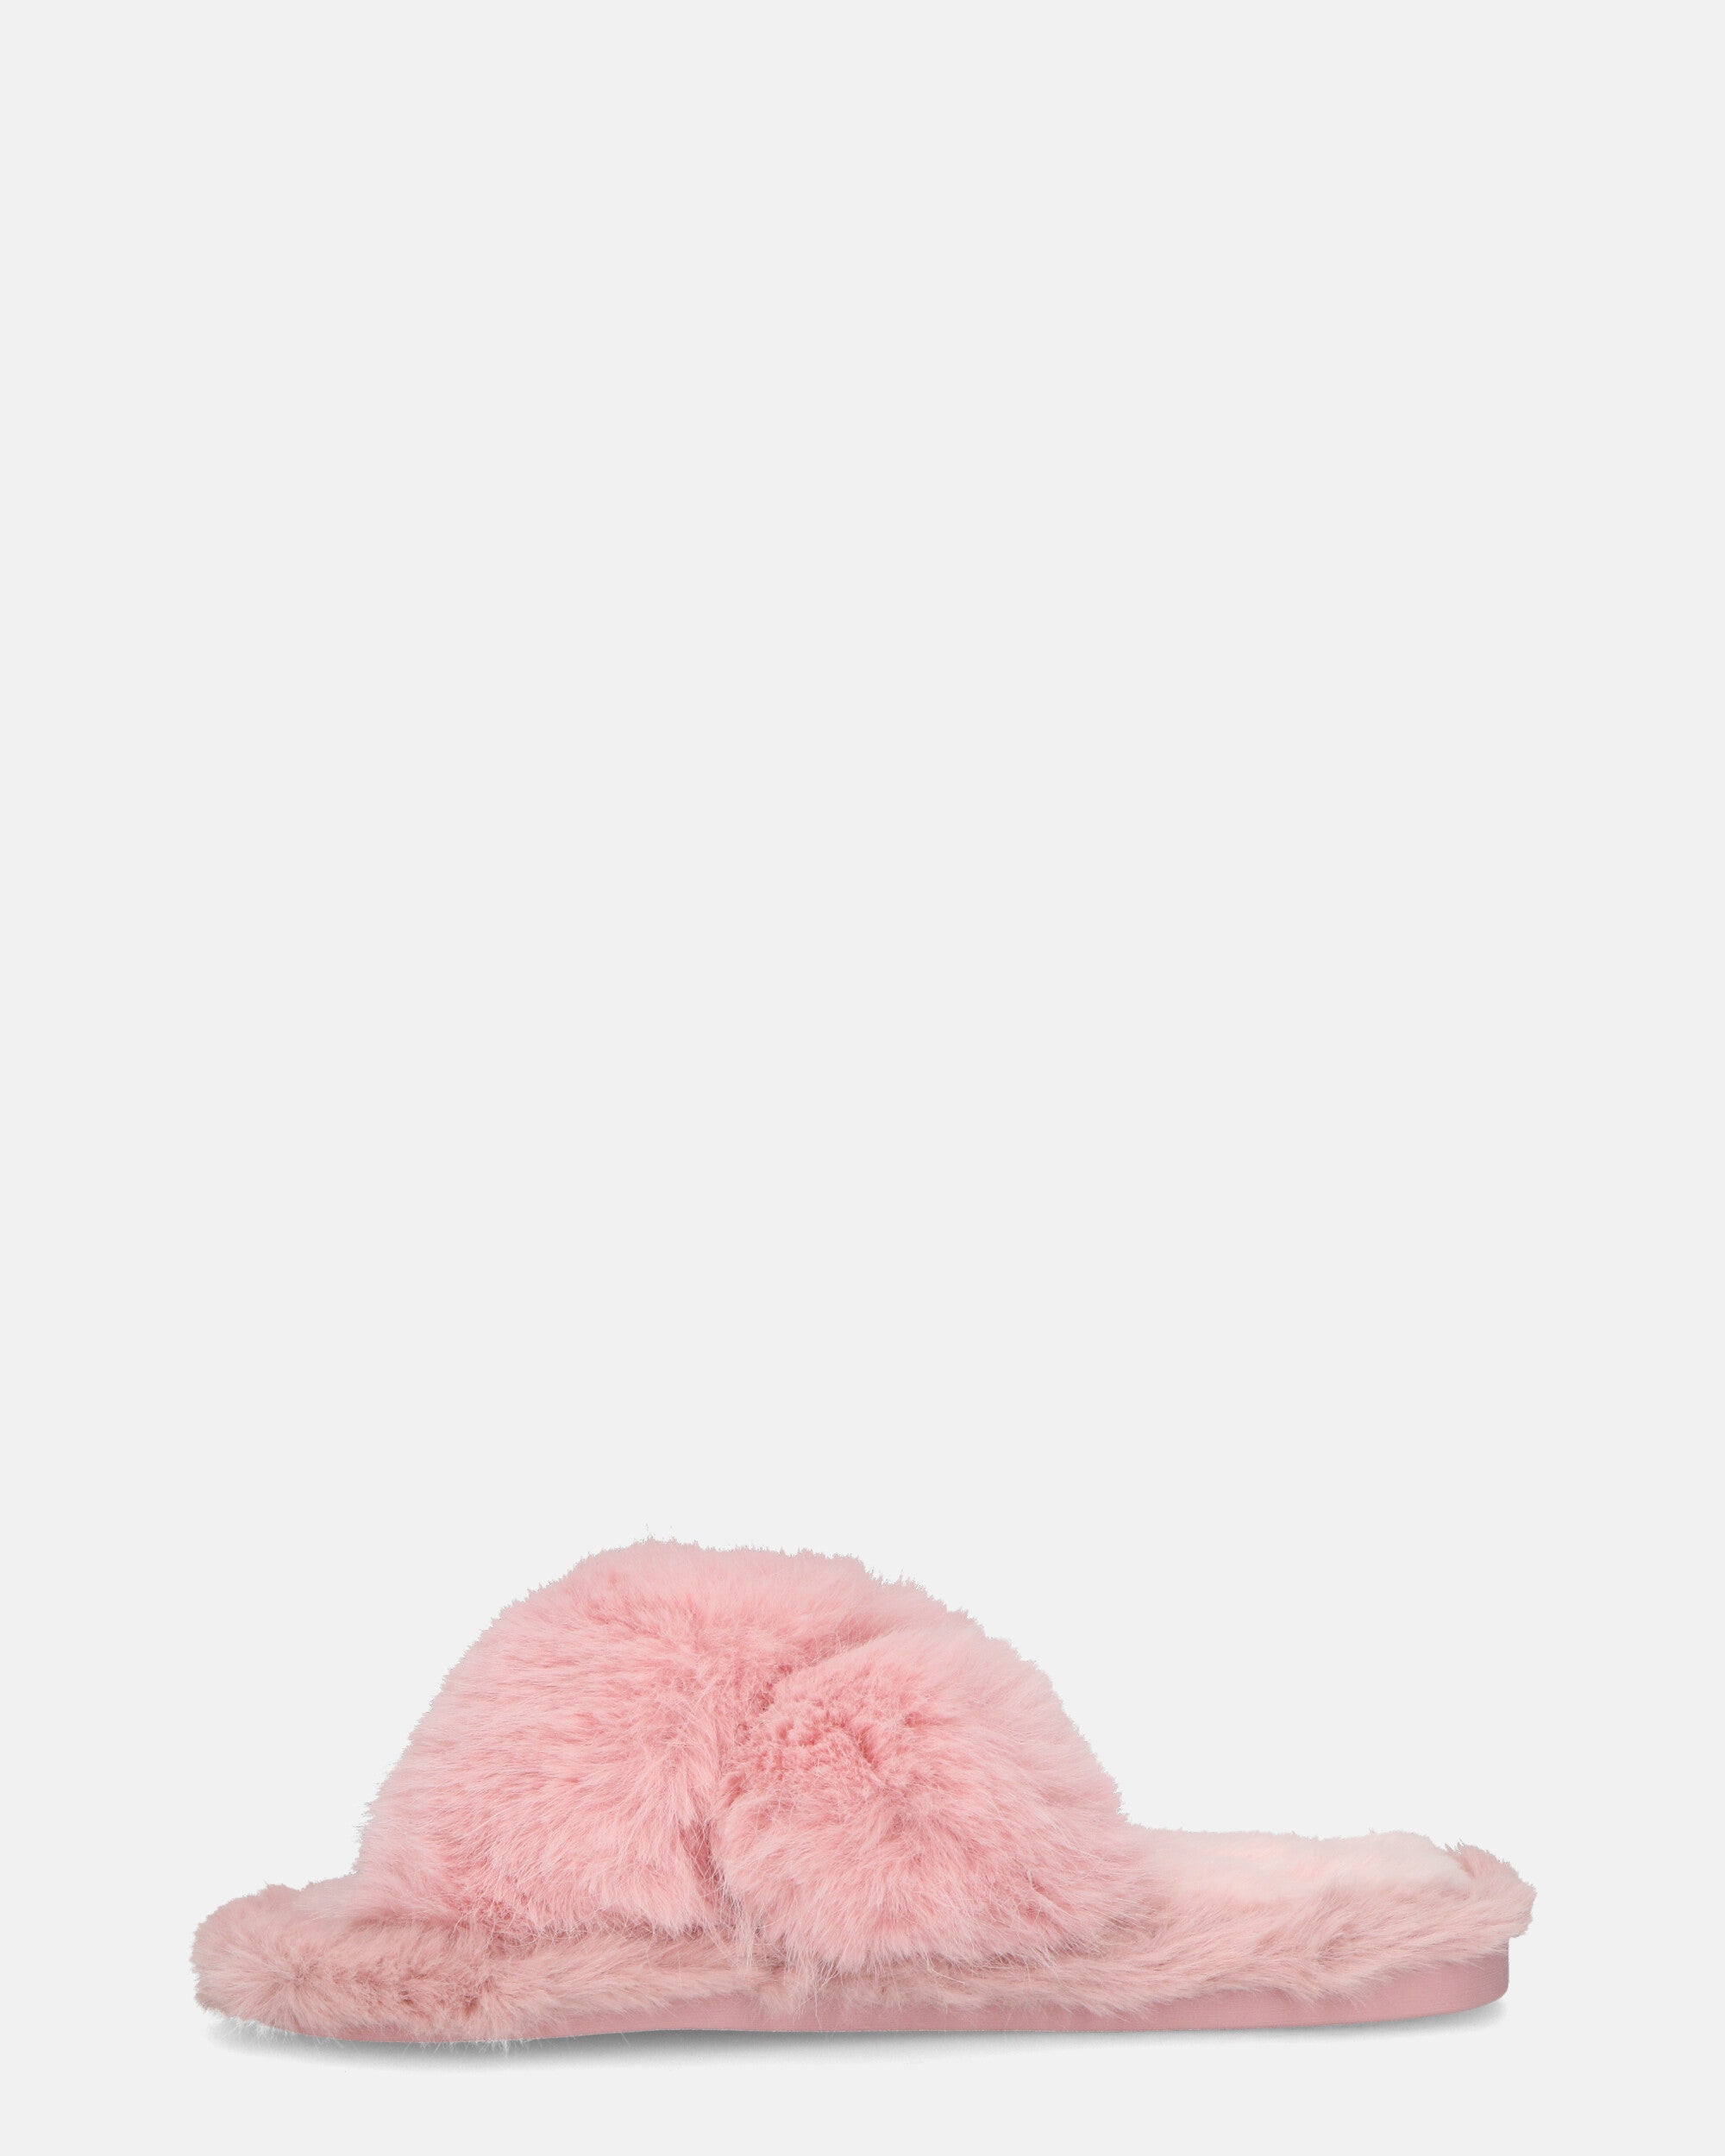 SUZUE - pantuflas abiertas con pelo rosa